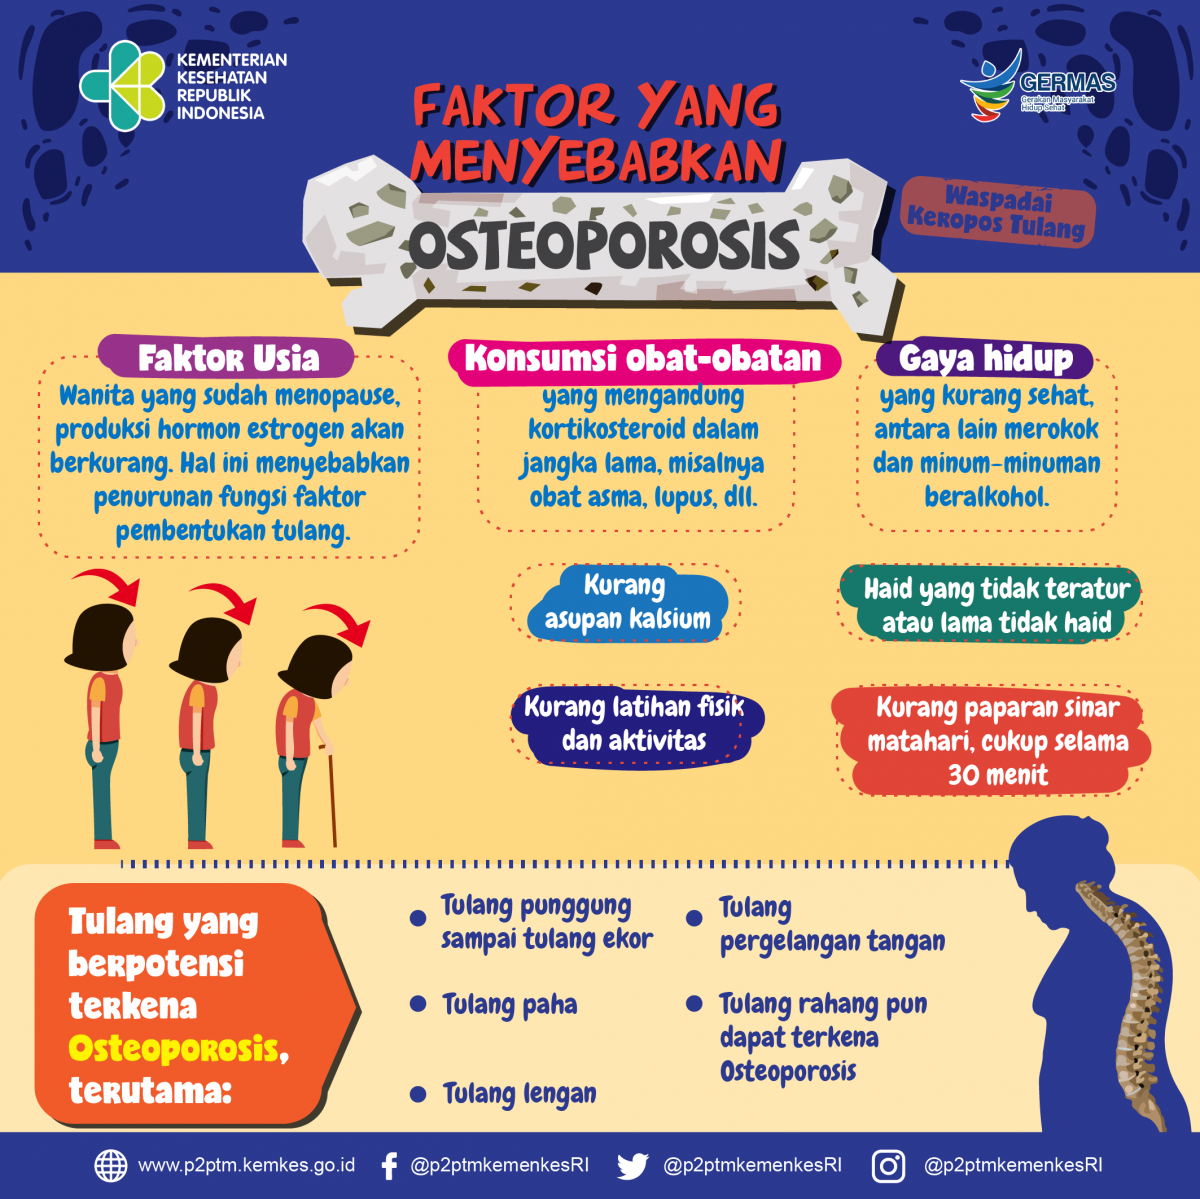 Apa saja faktor yang menyebabkan Osteoporosis?